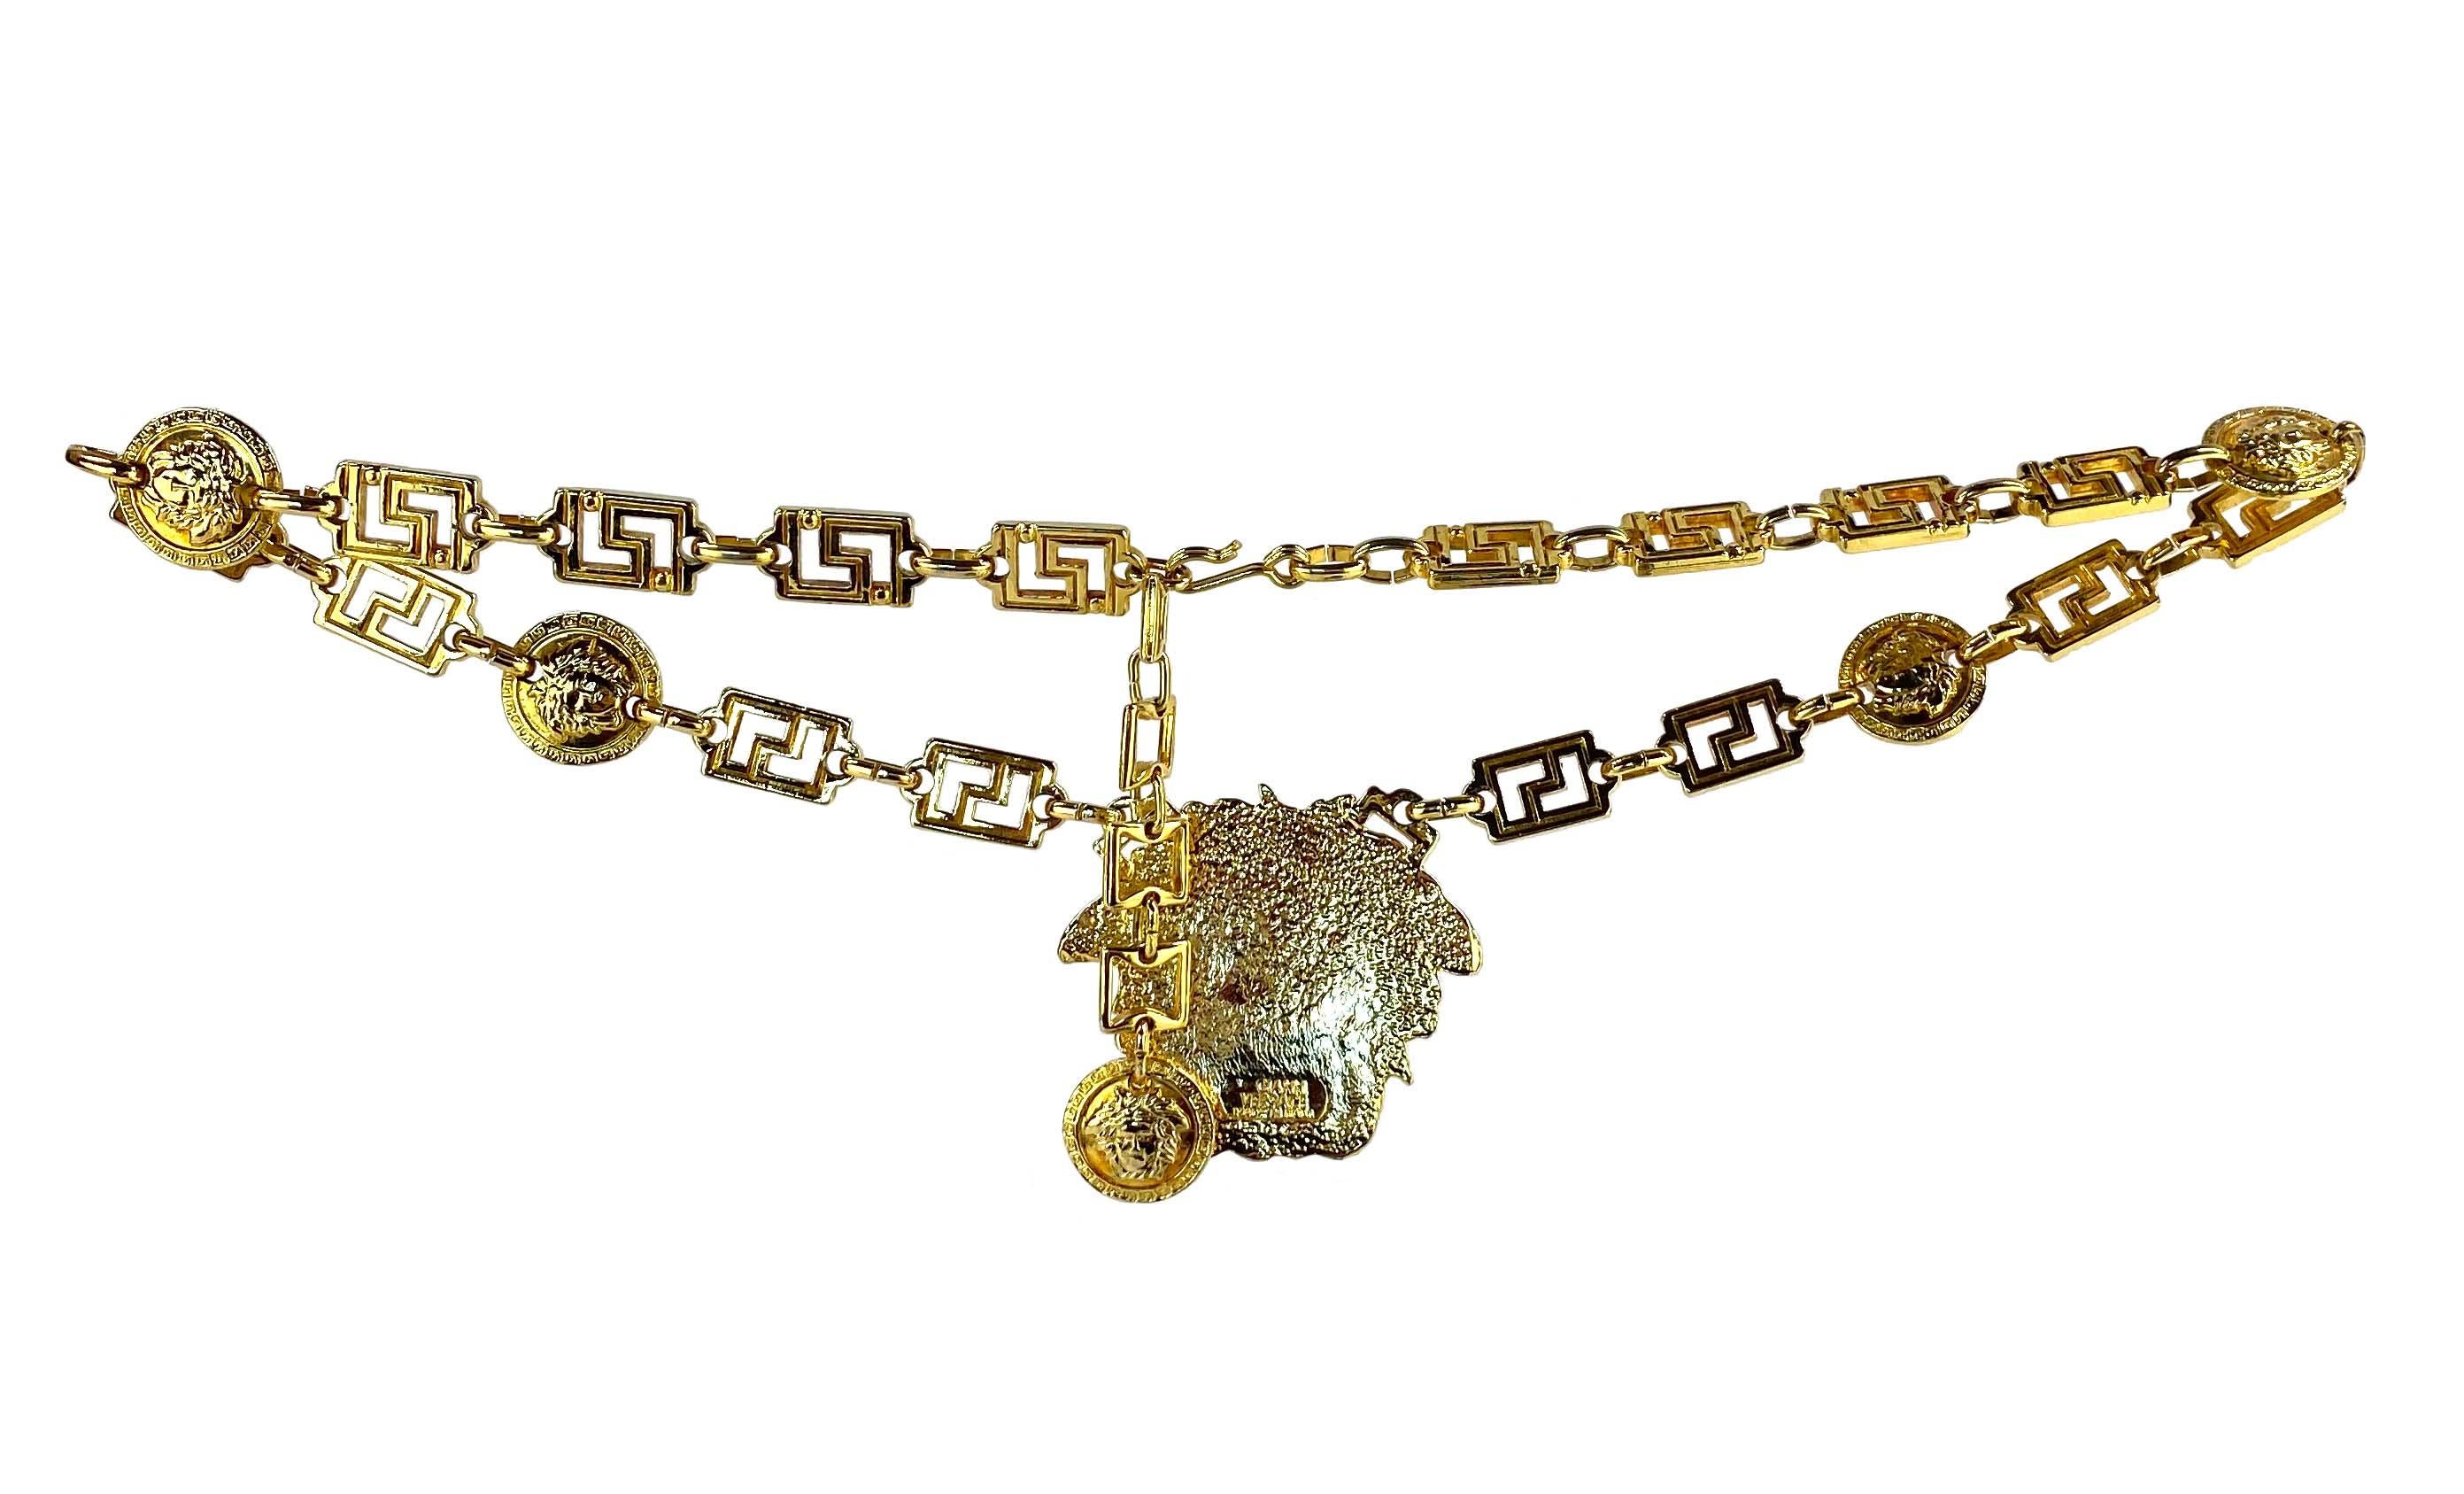 Ceinture/collier en chaîne de Gianni Versace avec clé grecque Medusa en or, conçu par Gianni Versace. Cette superbe ceinture est fabriquée en métal doré et comporte un porte-clés grec avec des médaillons de Méduse de Versace. Au premier plan, la